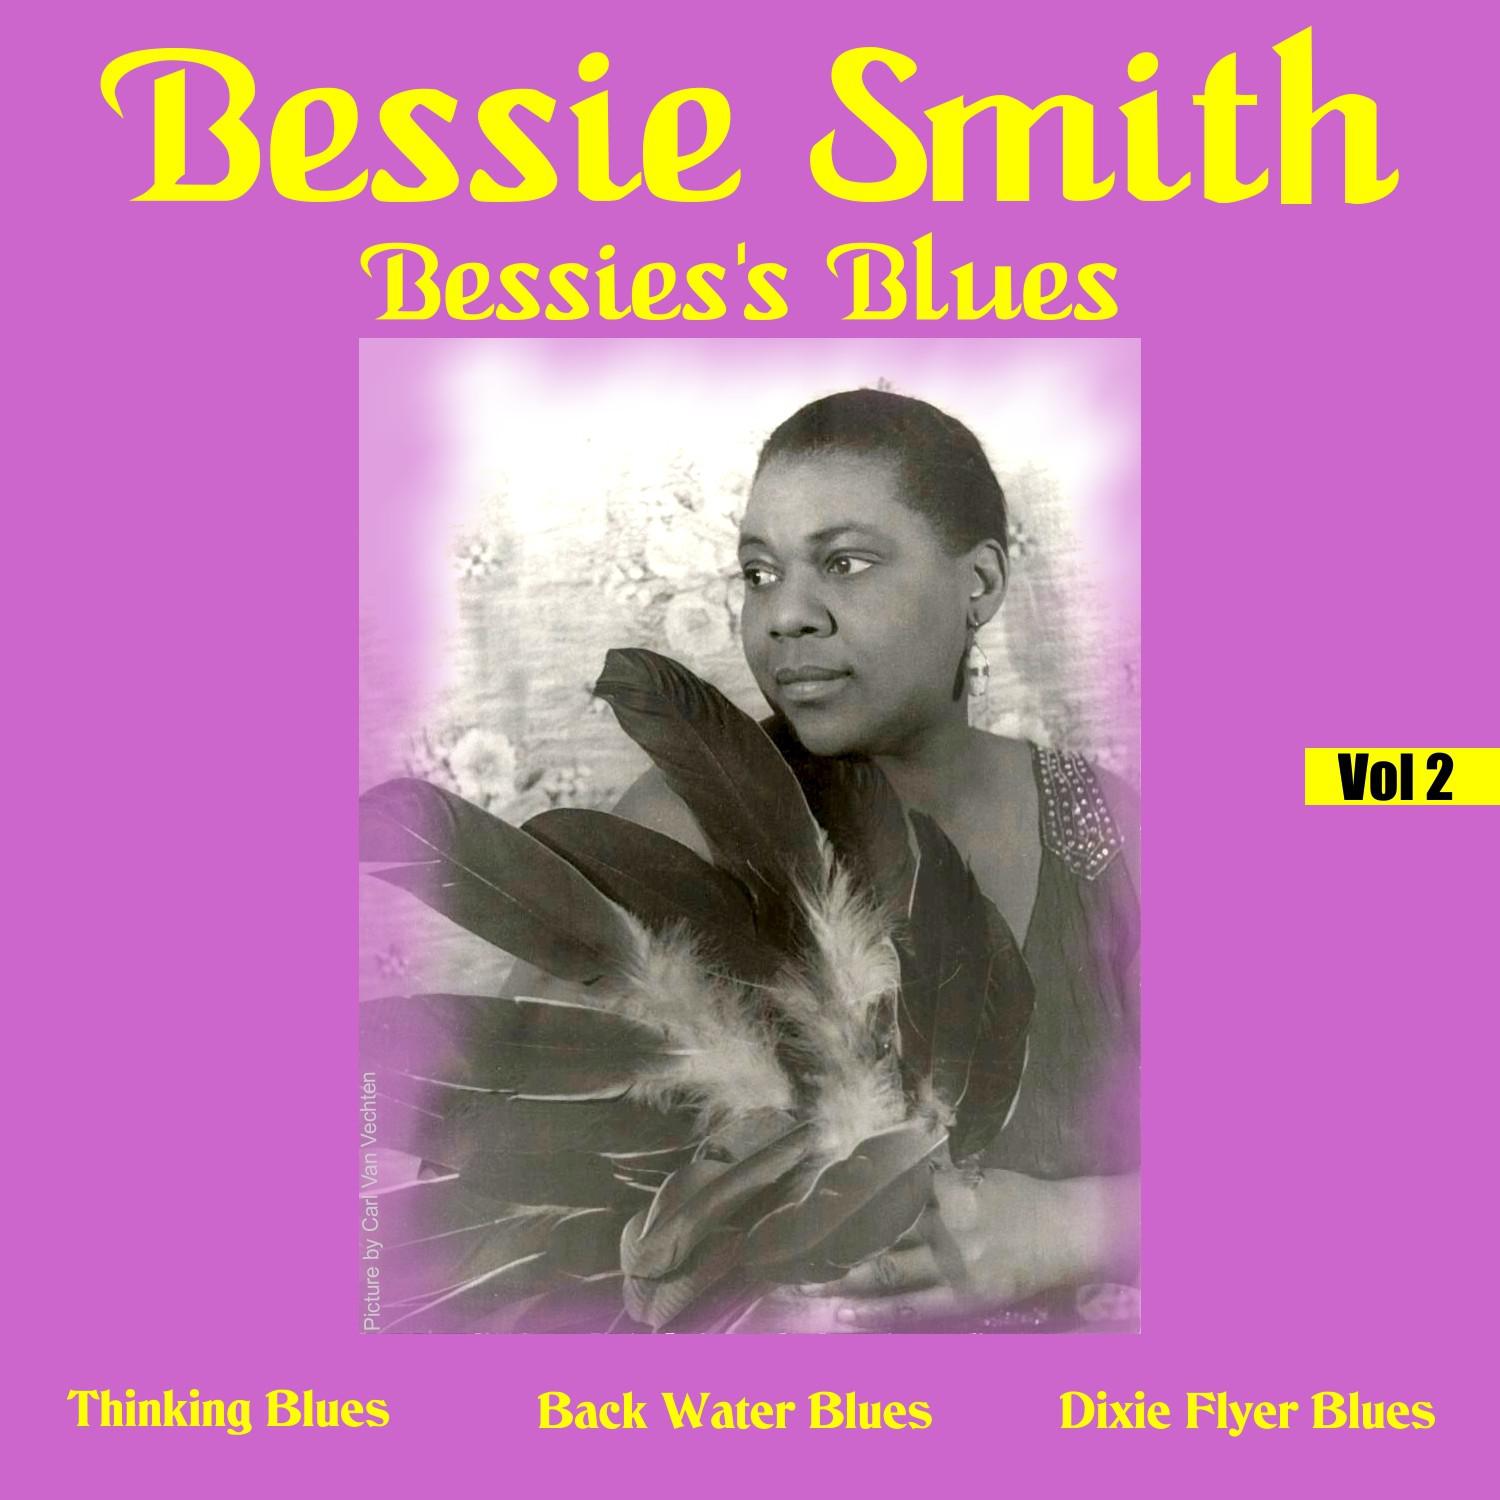 Bessies's Blues, Vol. 2